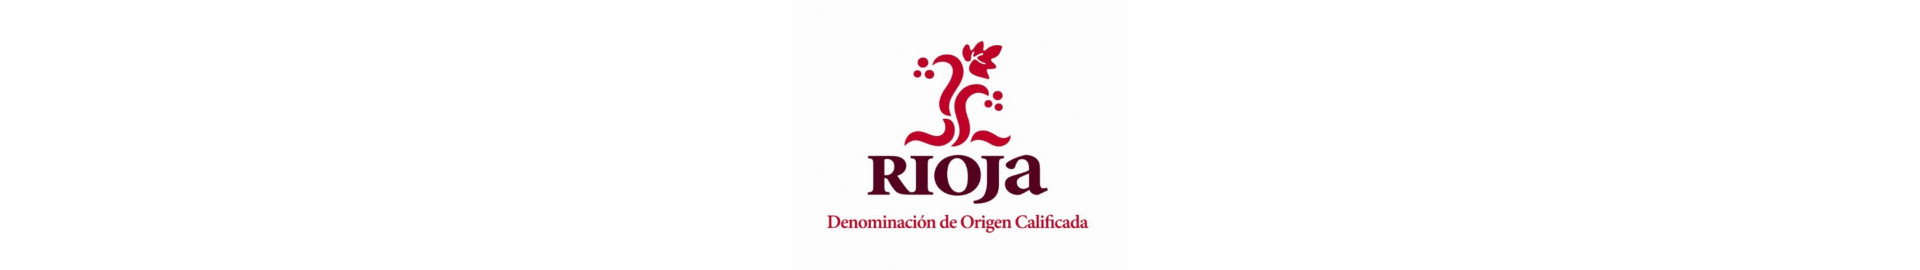 Rioja, el vino español por excelencia